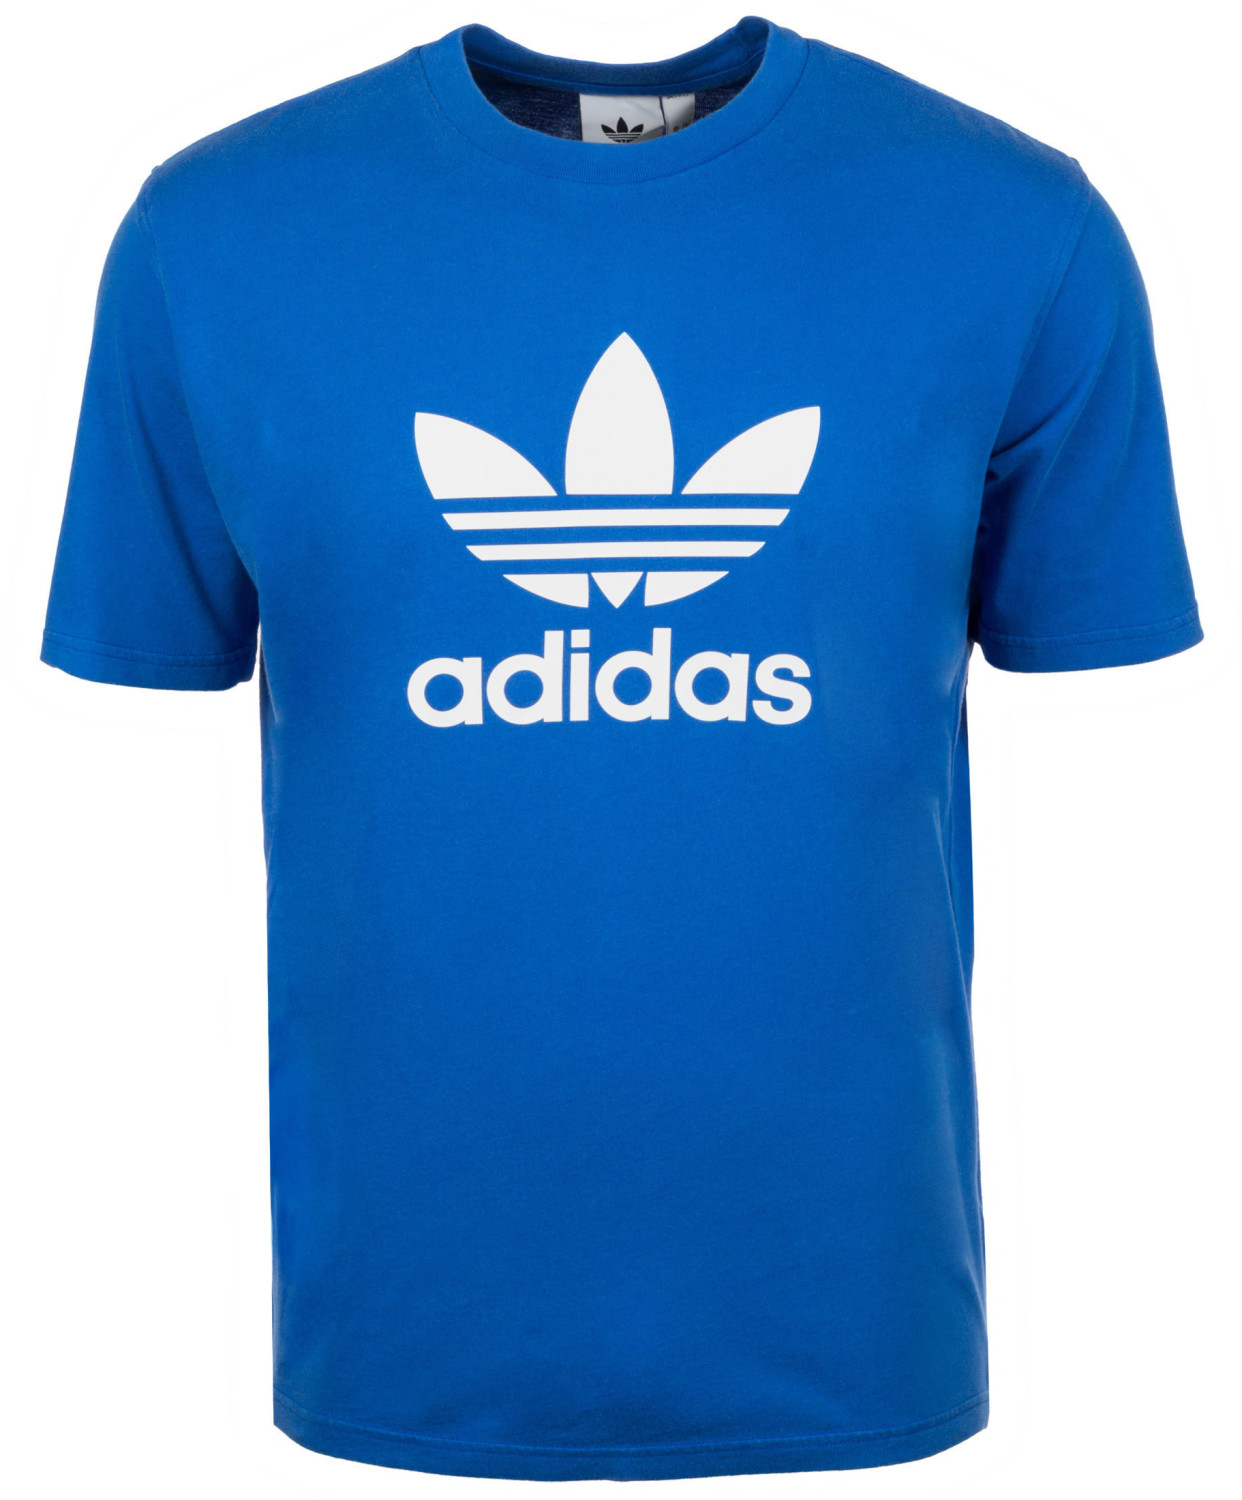 Adidas Originals Trefoil T-Shirt blue